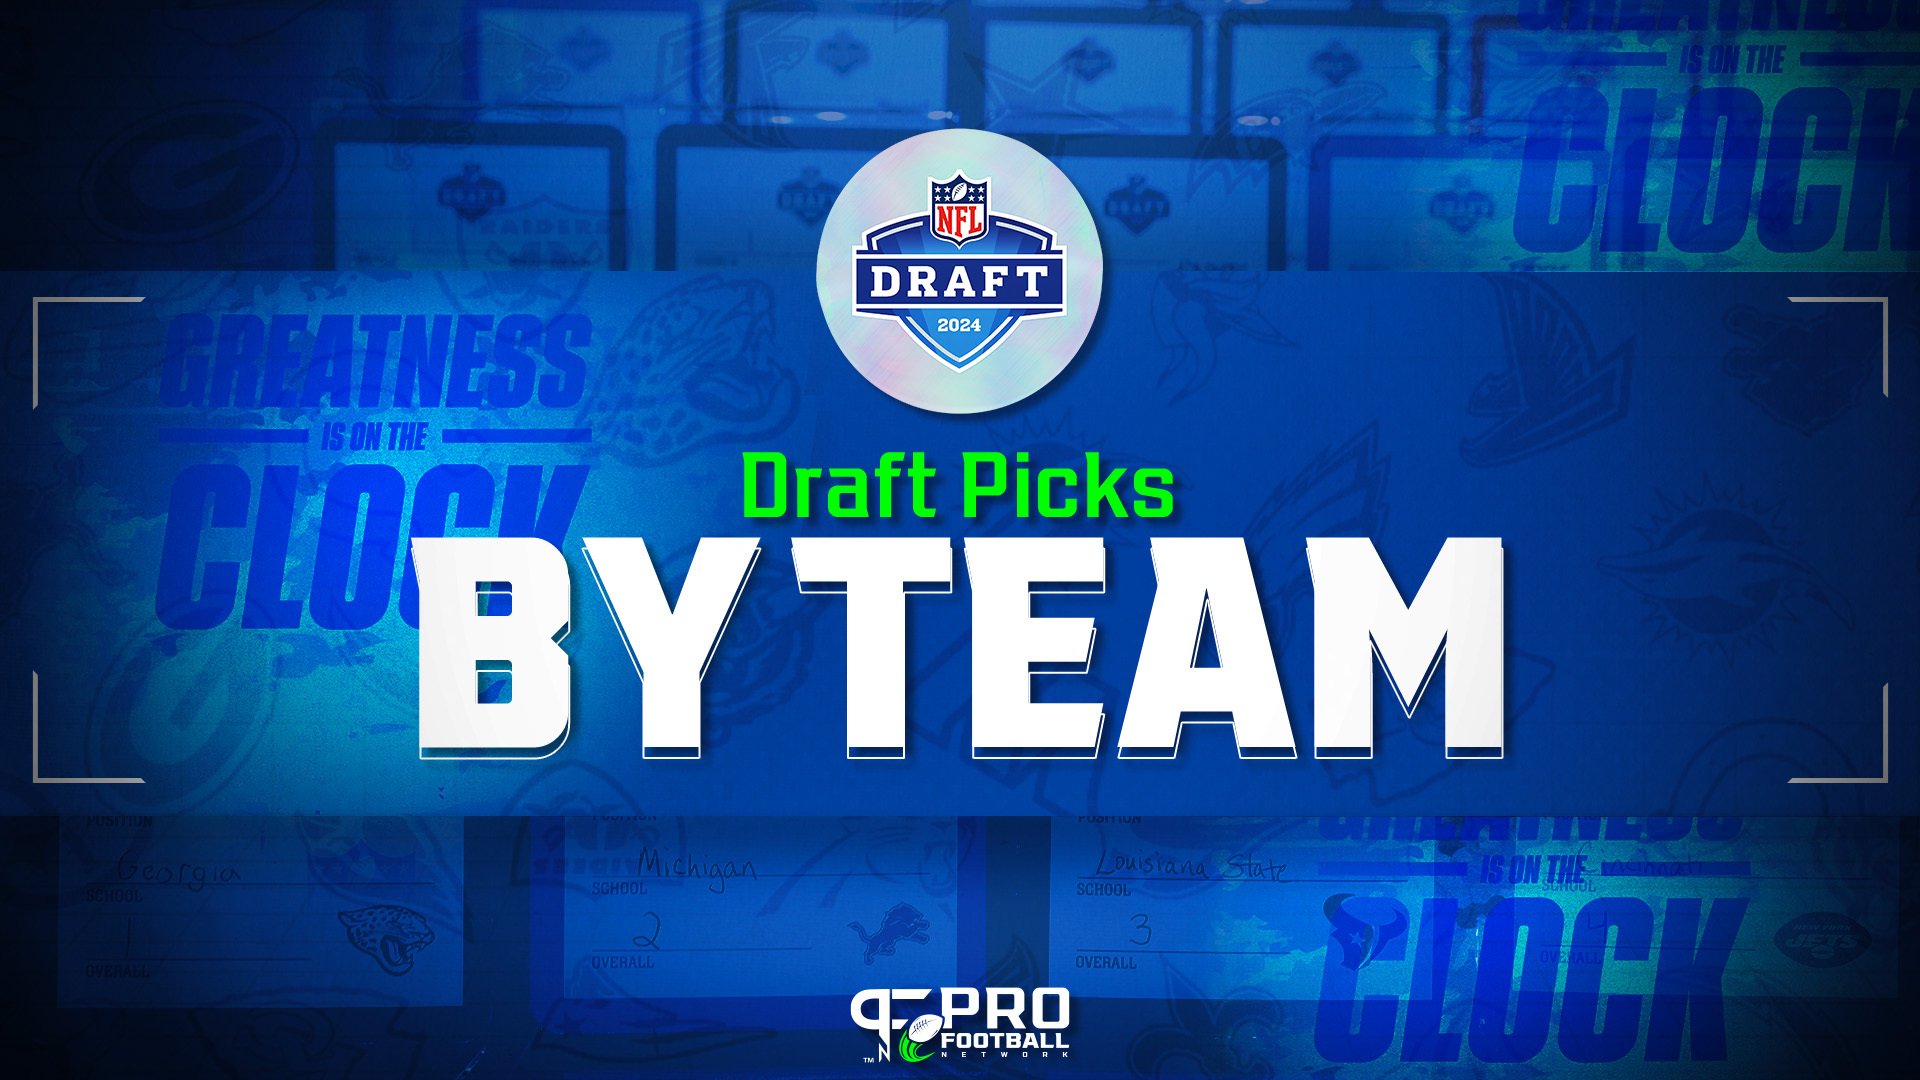 NFL Draft Picks by Team